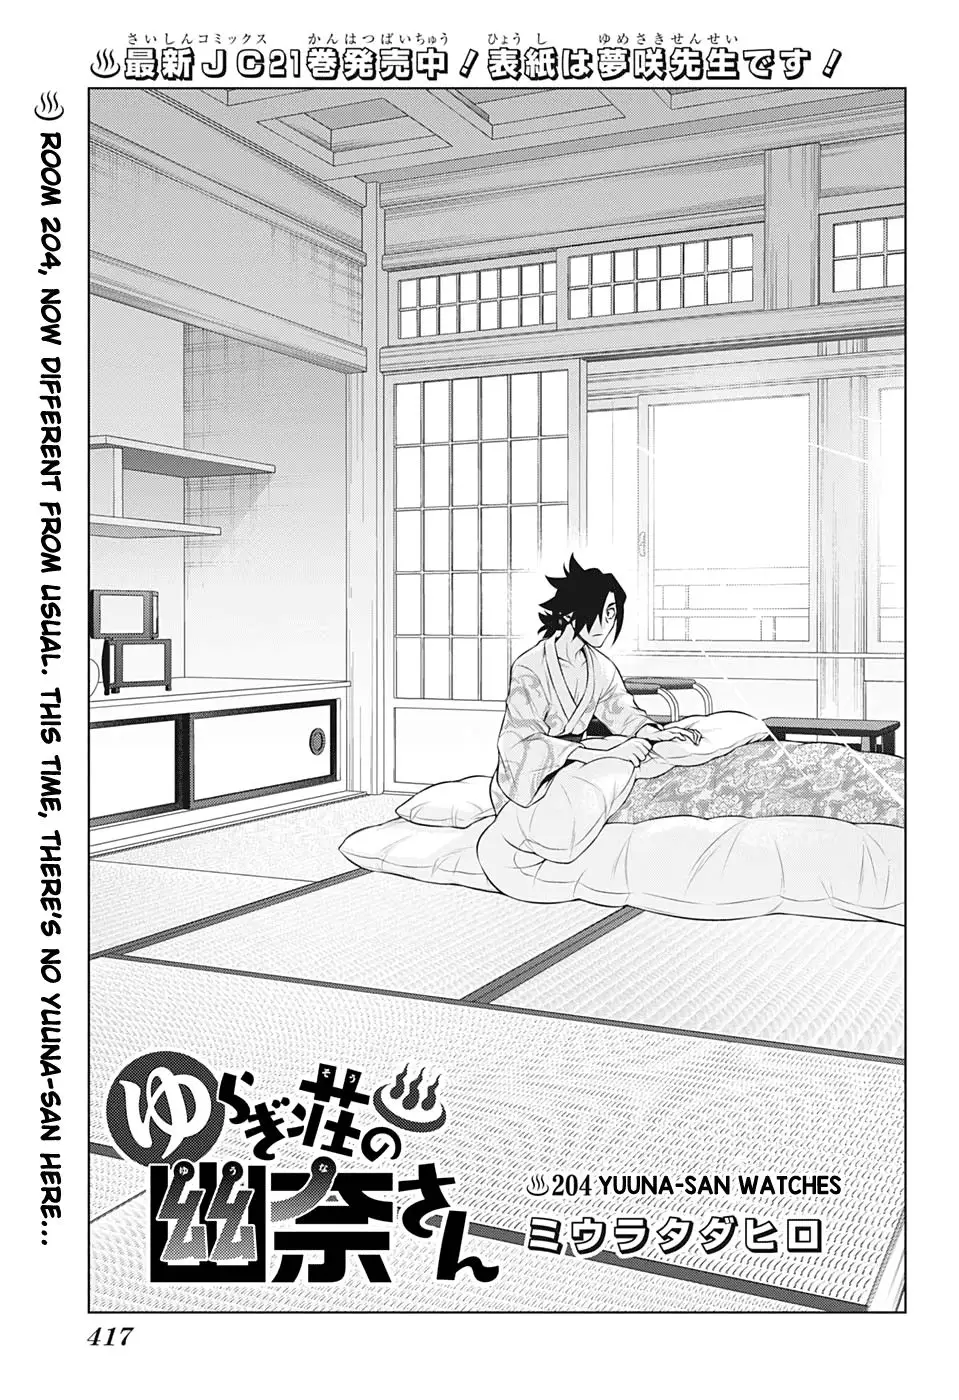 Yuragi-sou no Yuuna-san - 204 page 1